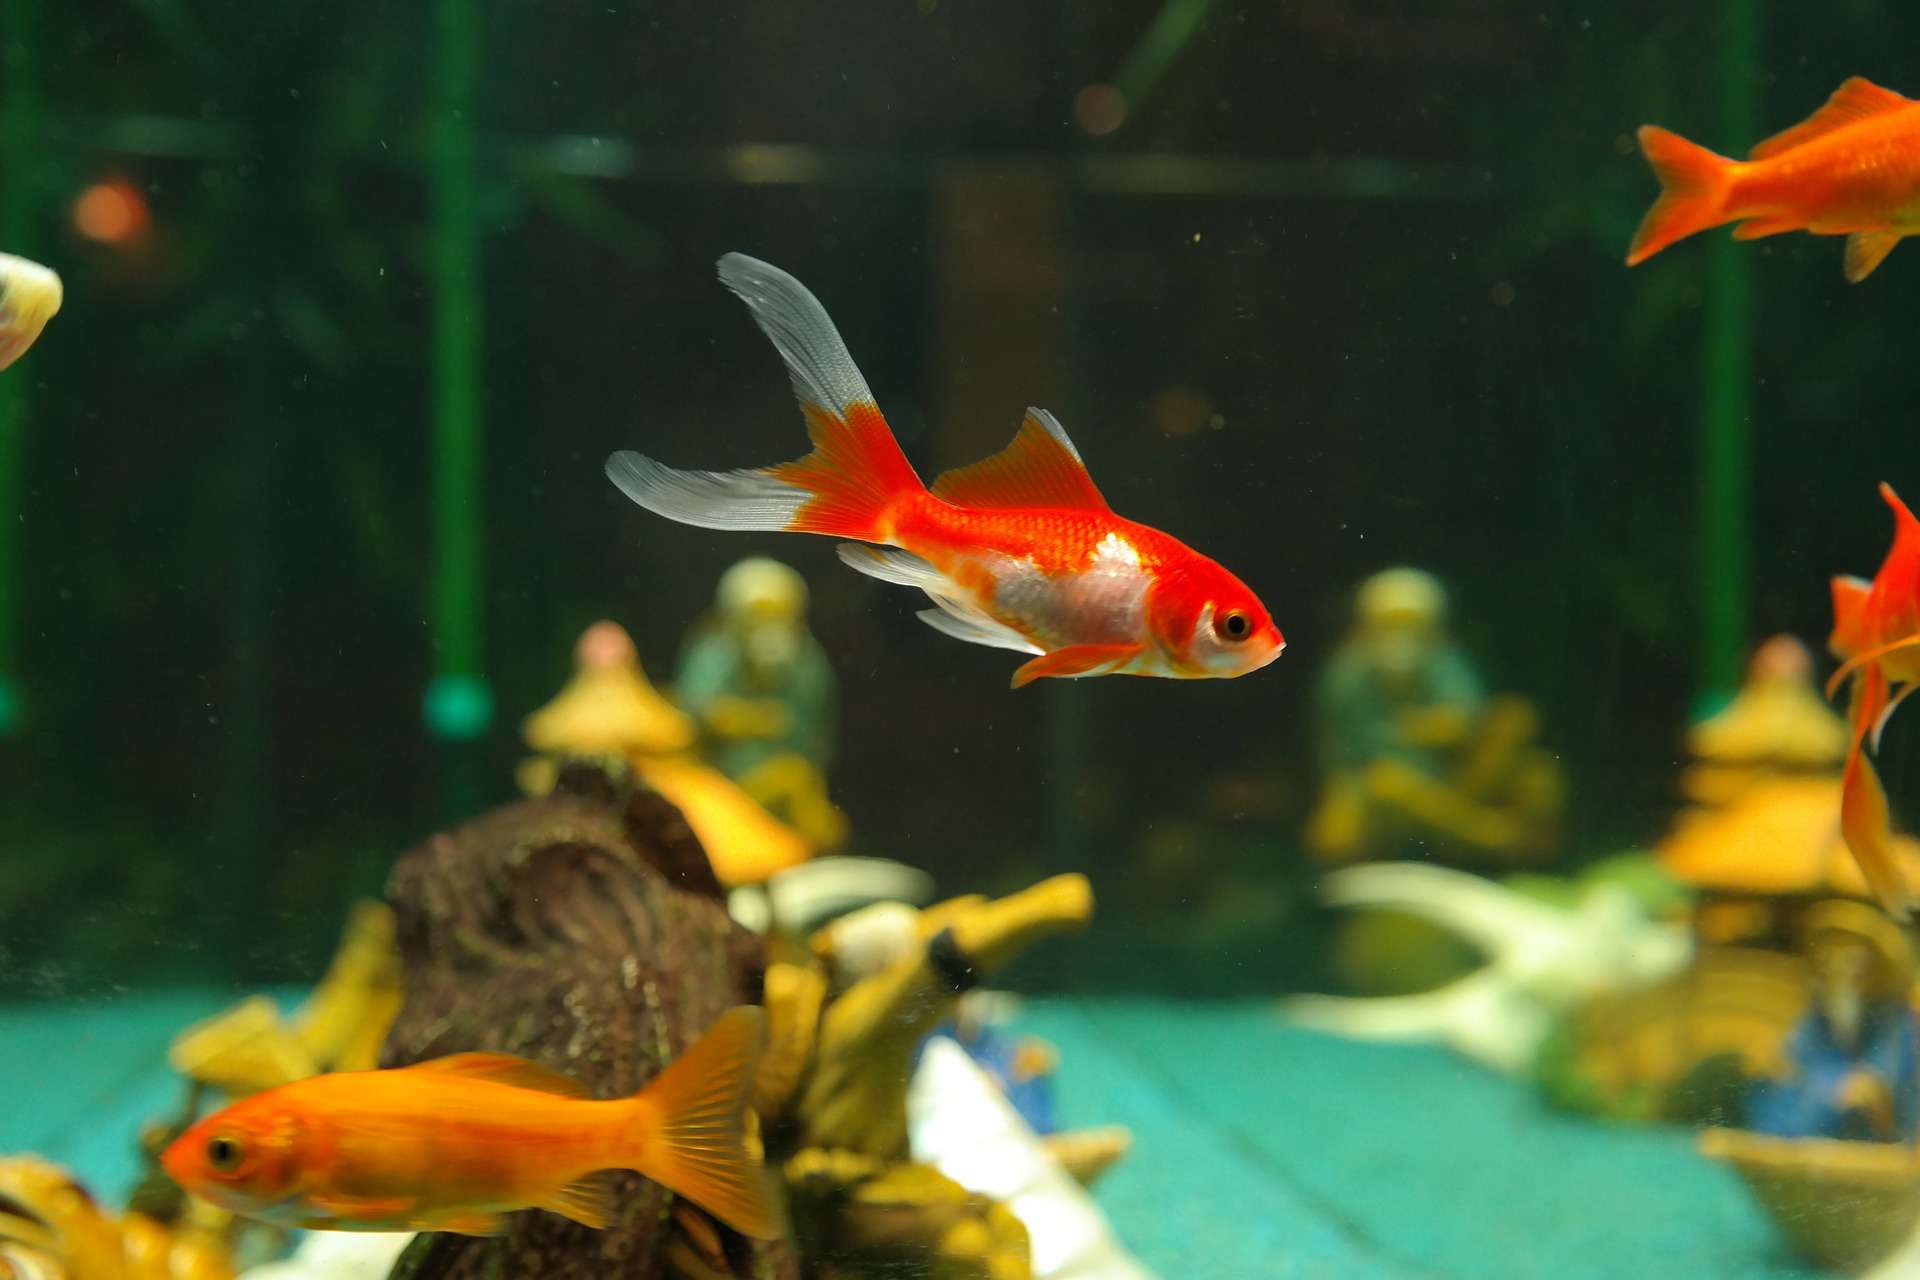 Le Japon crée un poisson rouge transparent